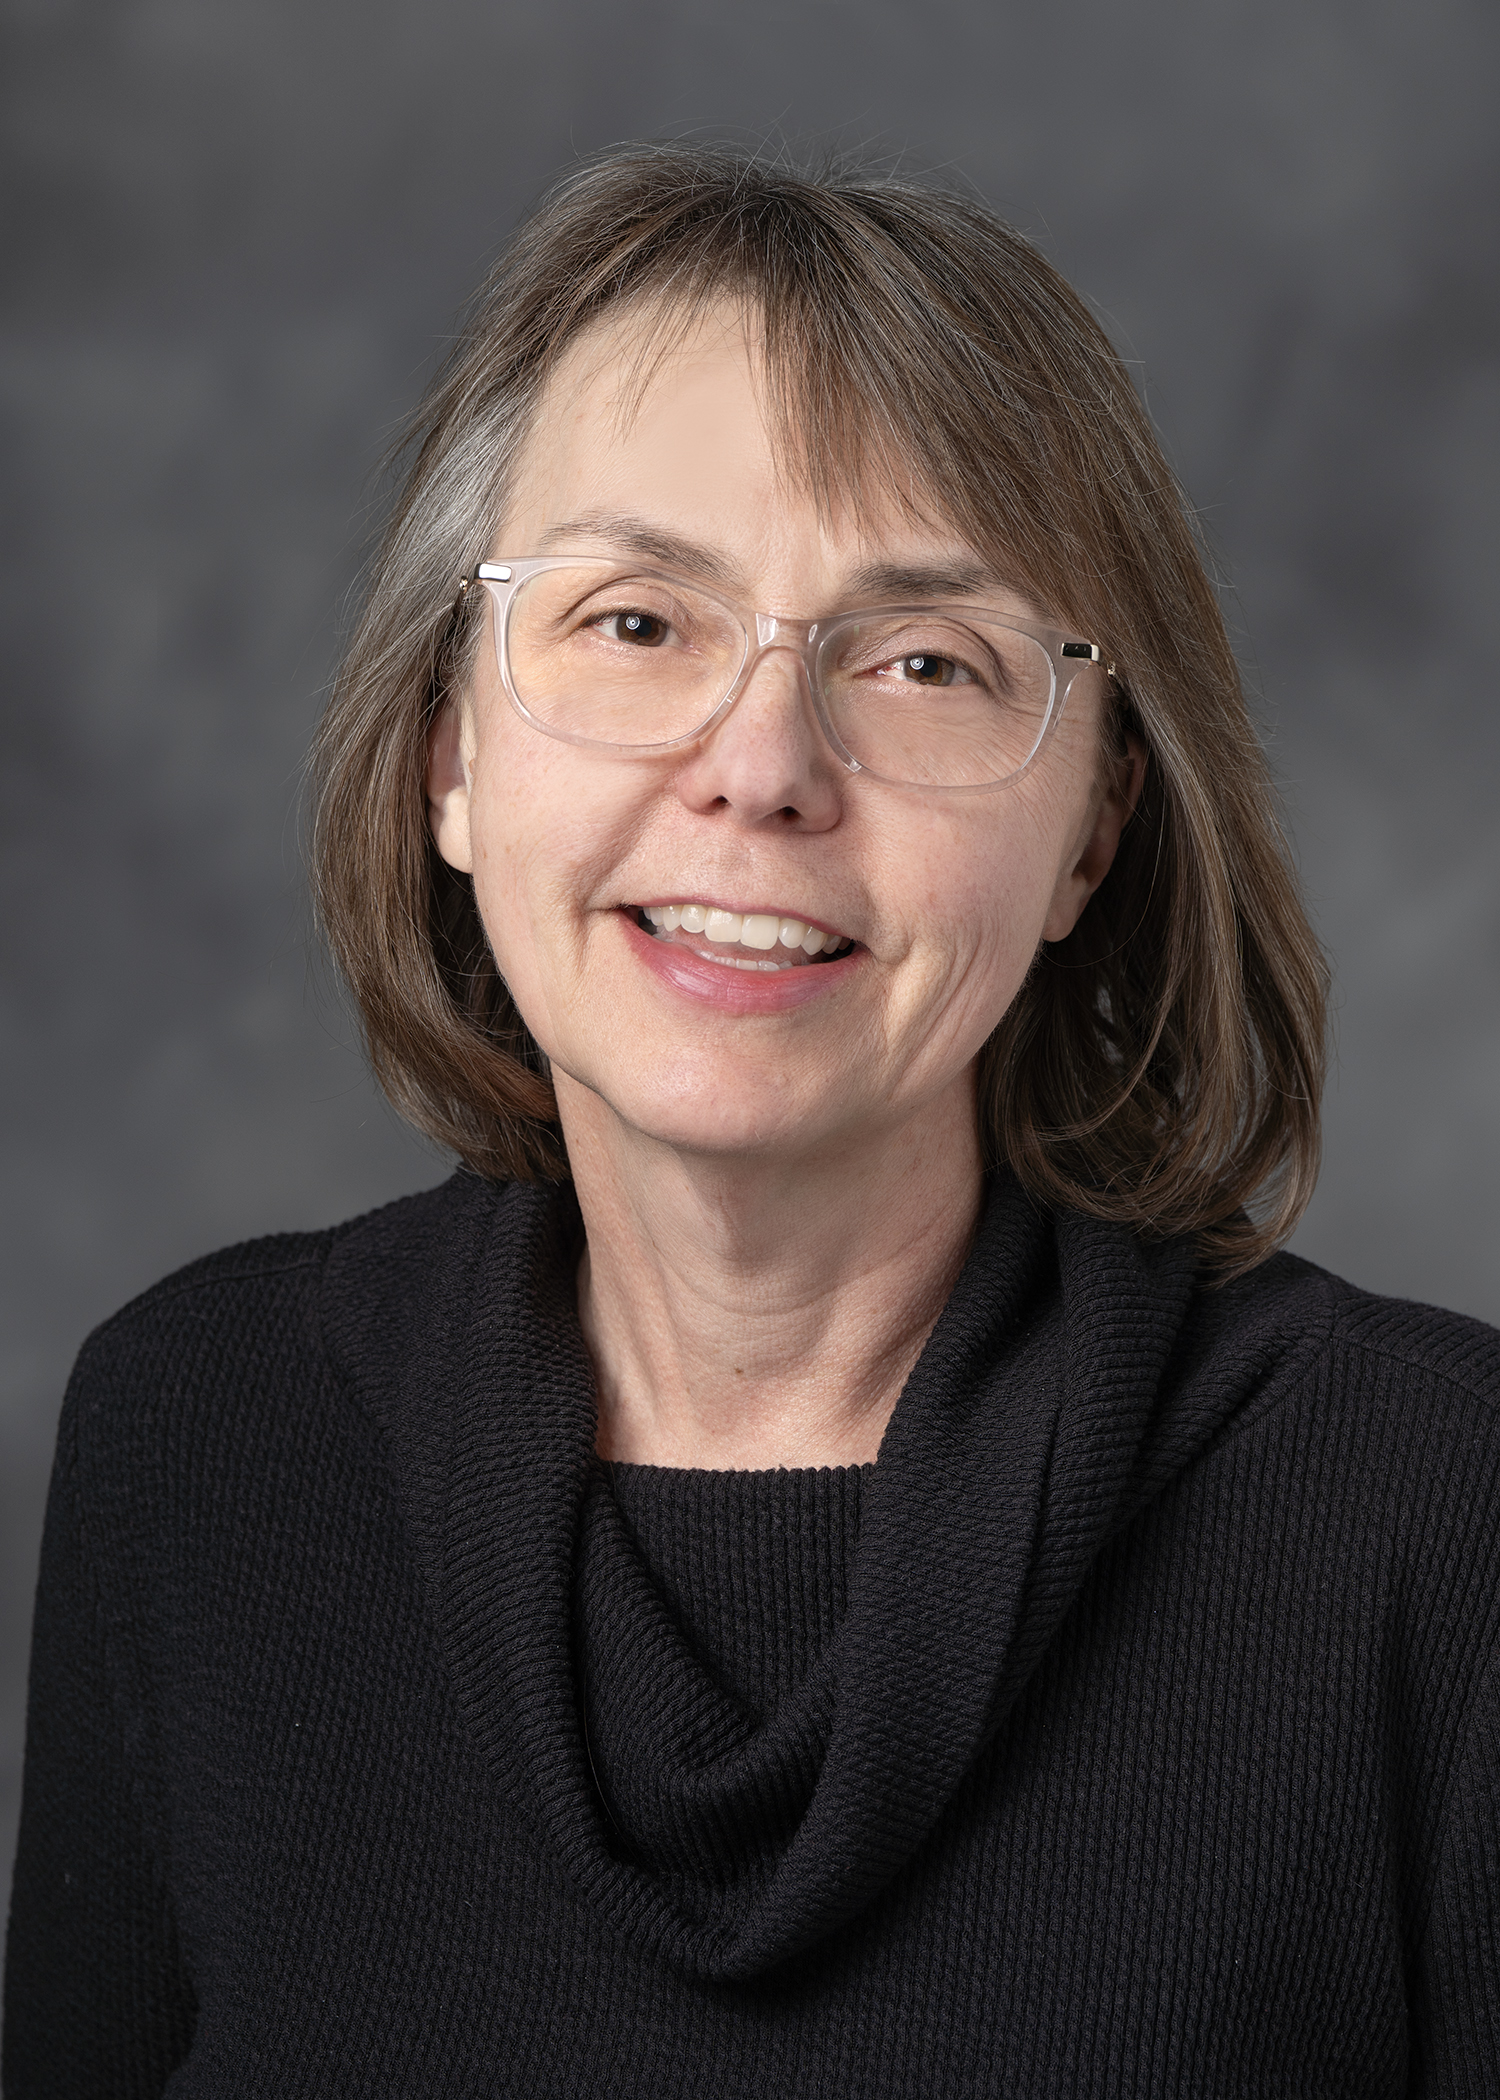 Dr. Christine Neslund-Dudas